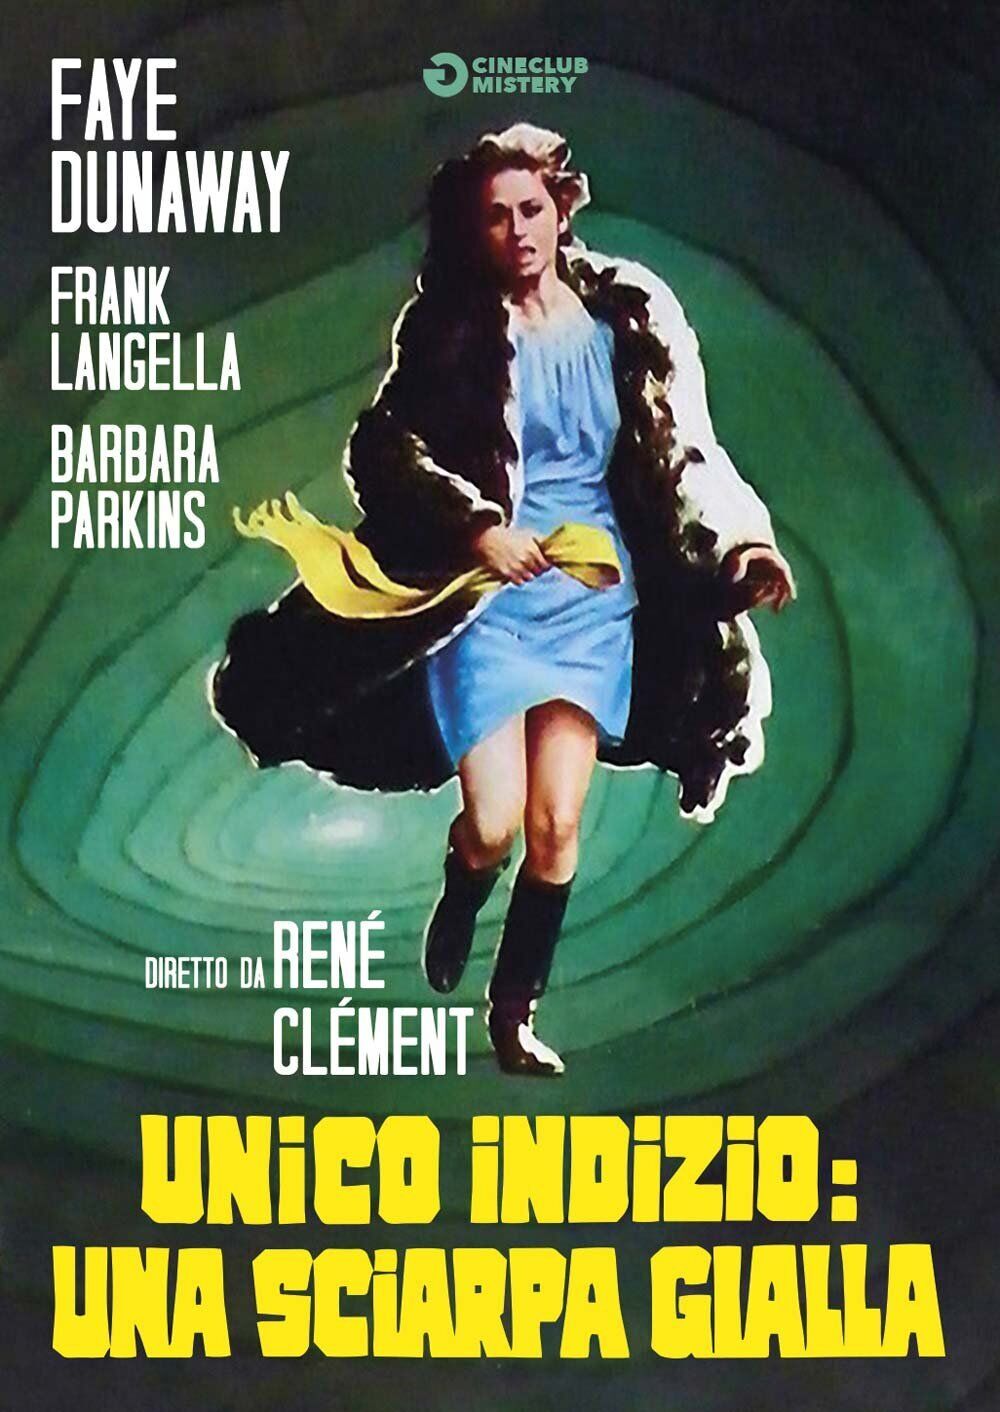 Unico indizio: Una sciarpa gialla (1971)